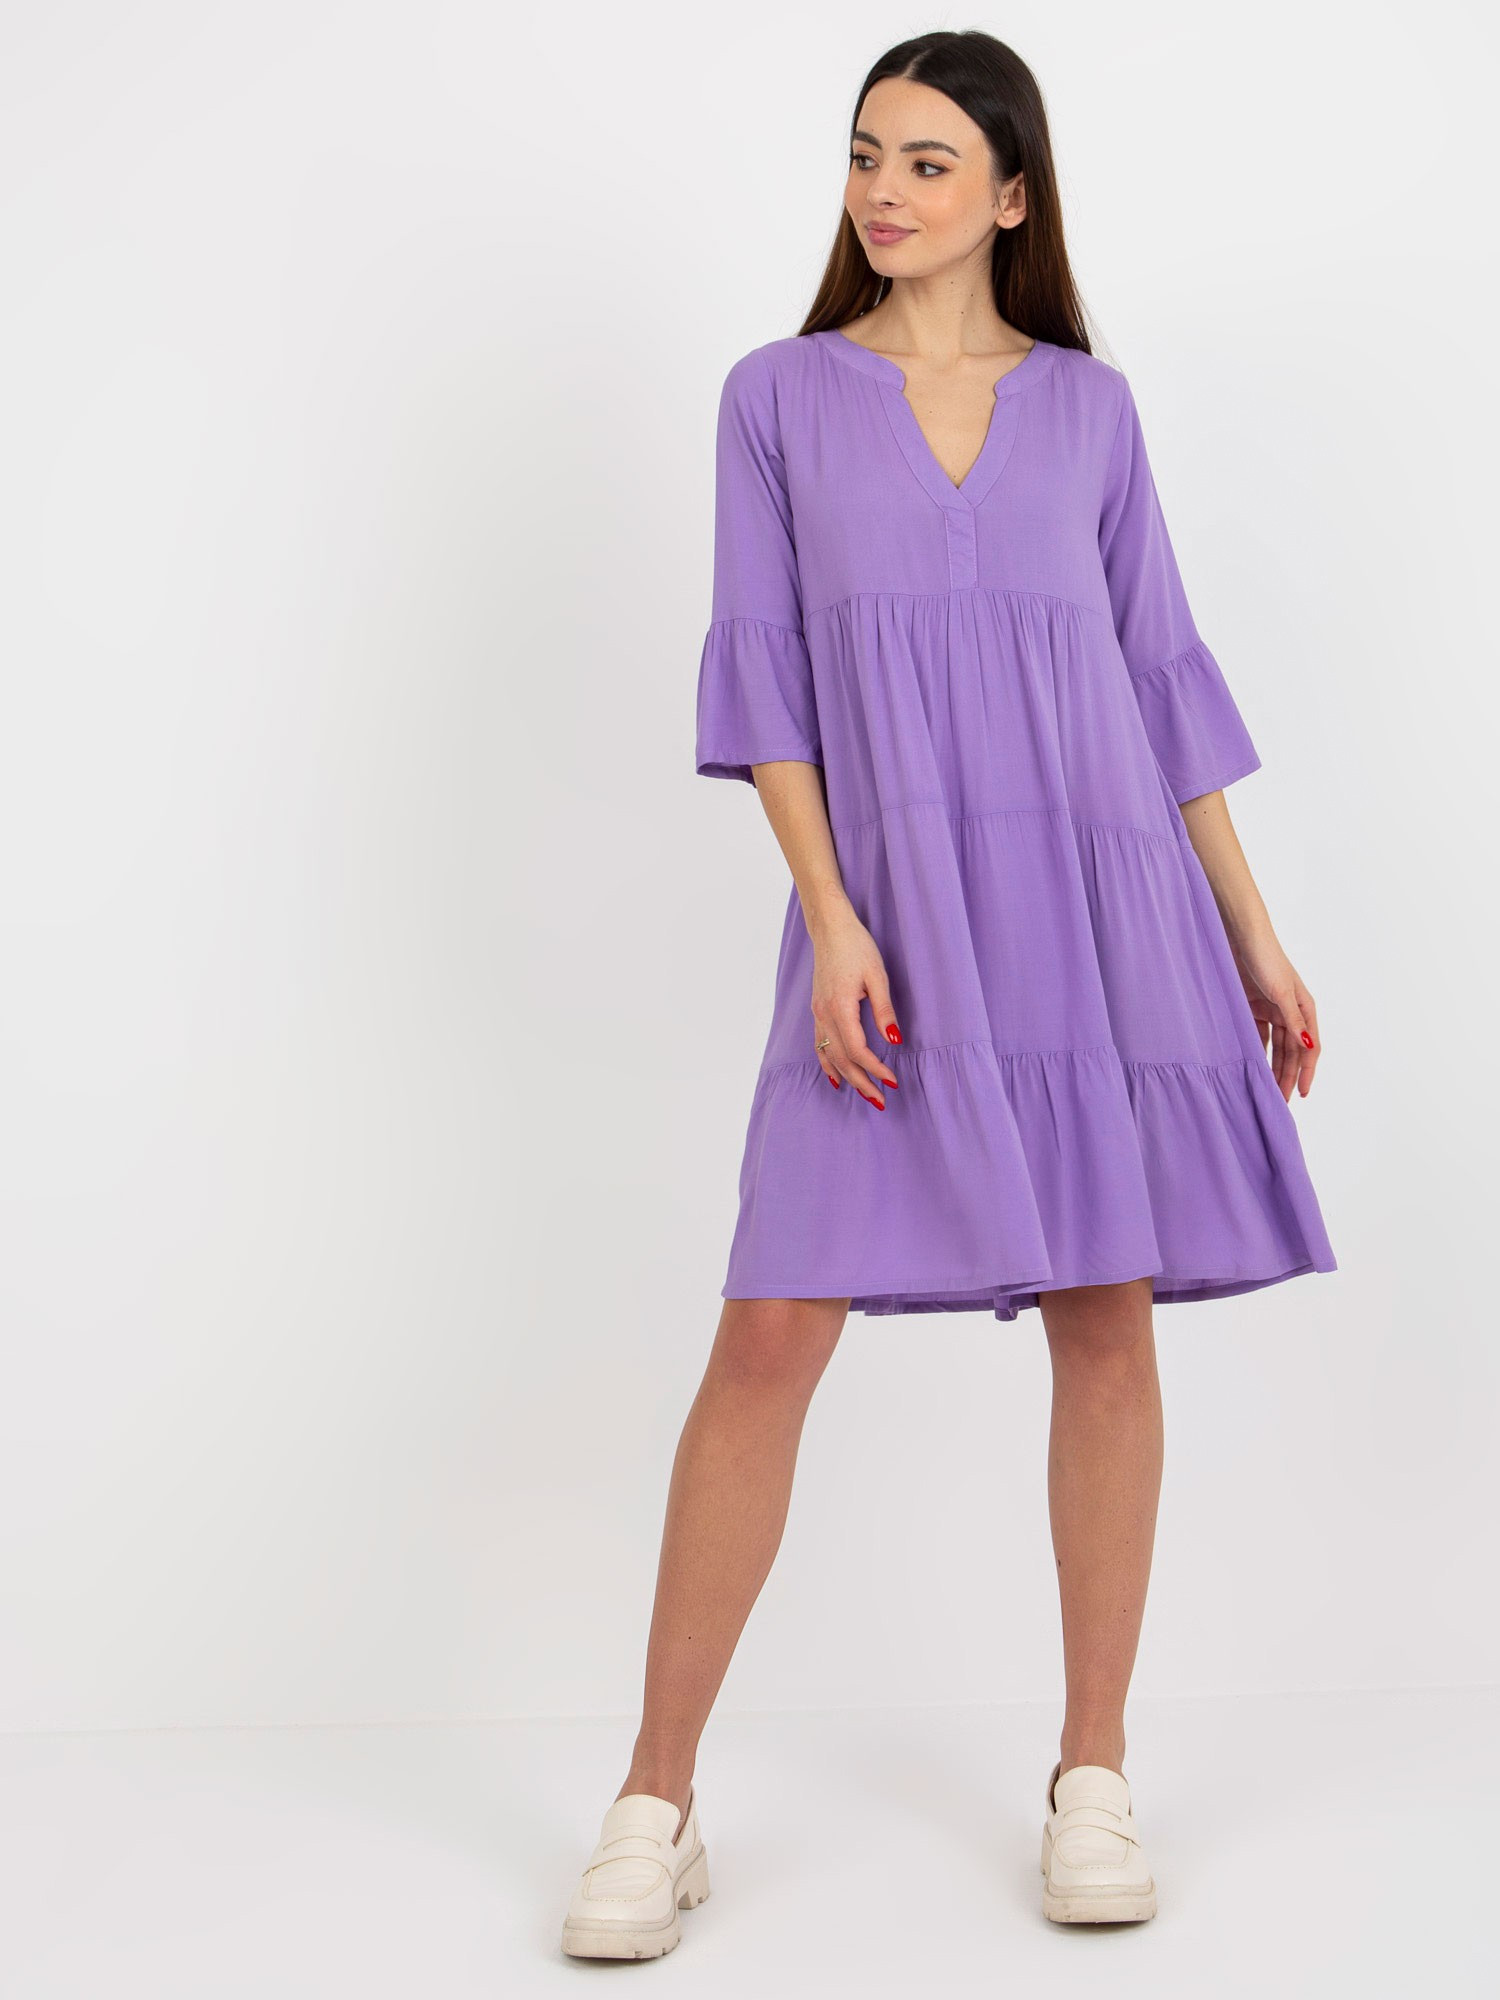 Dámské šaty D73761M30214B fialové - FPrice S